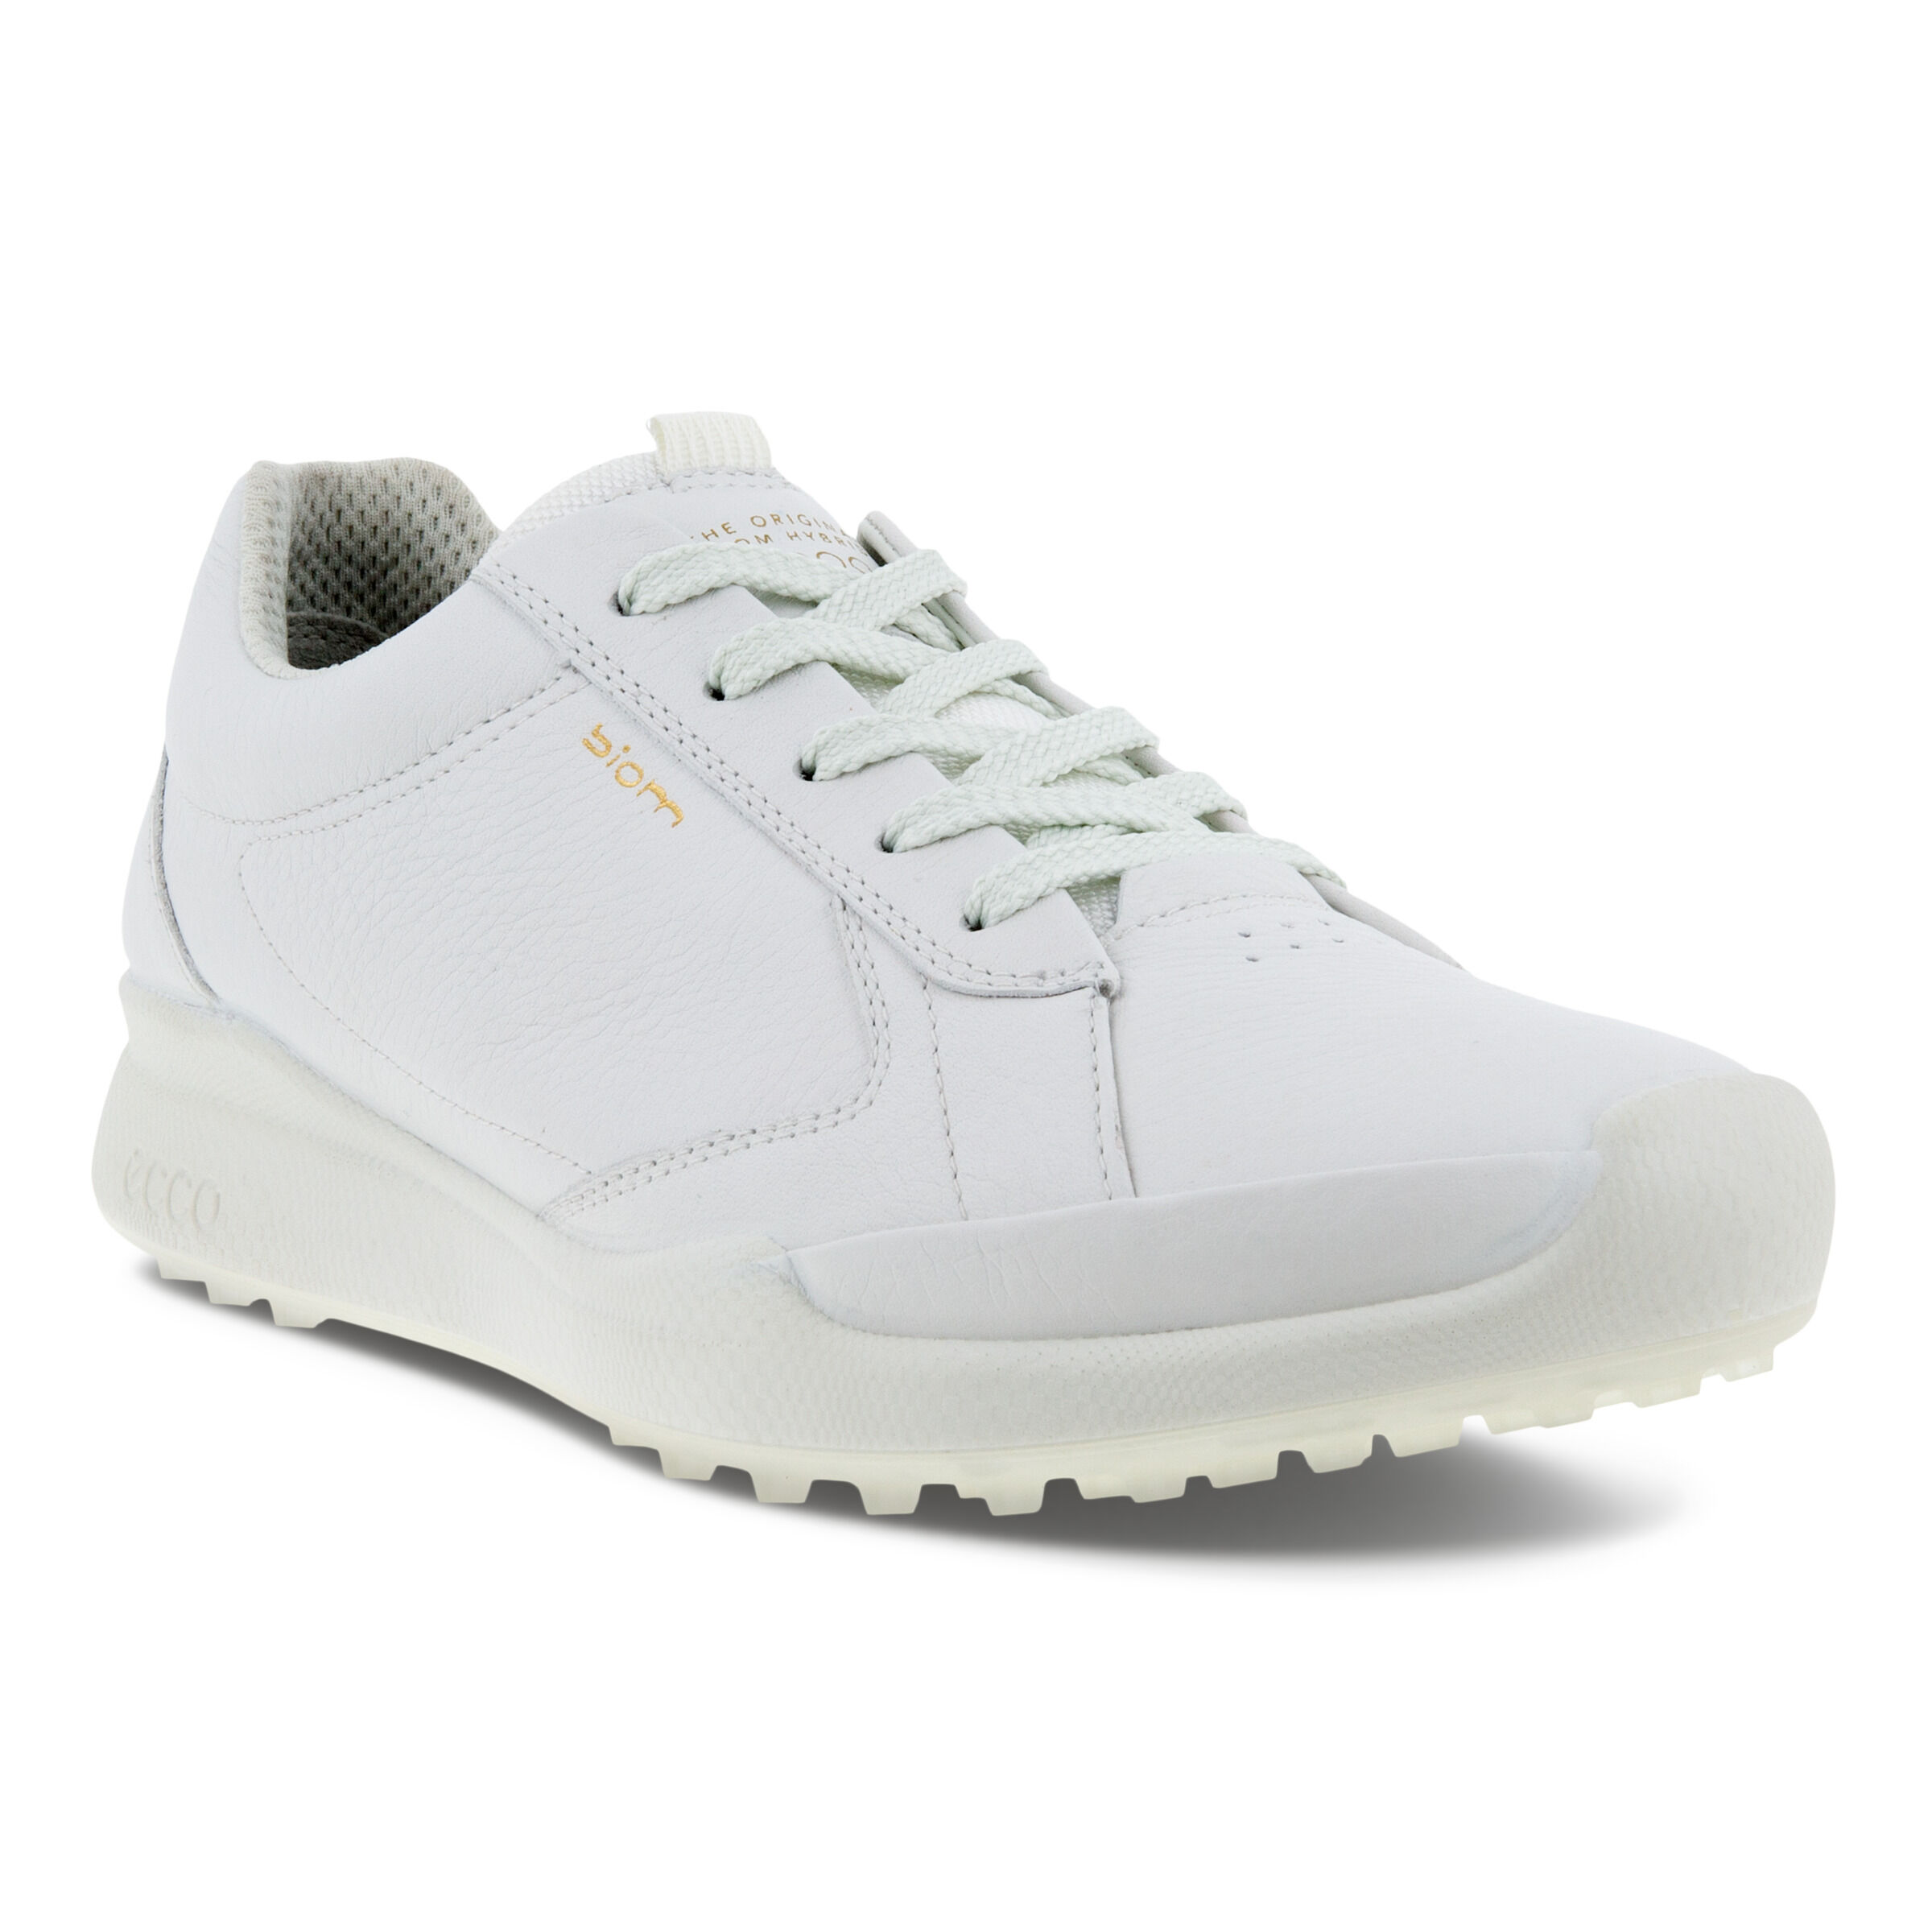 ECCO BIOM Women's Golf Shoes - Buy Online Now | ECCO®